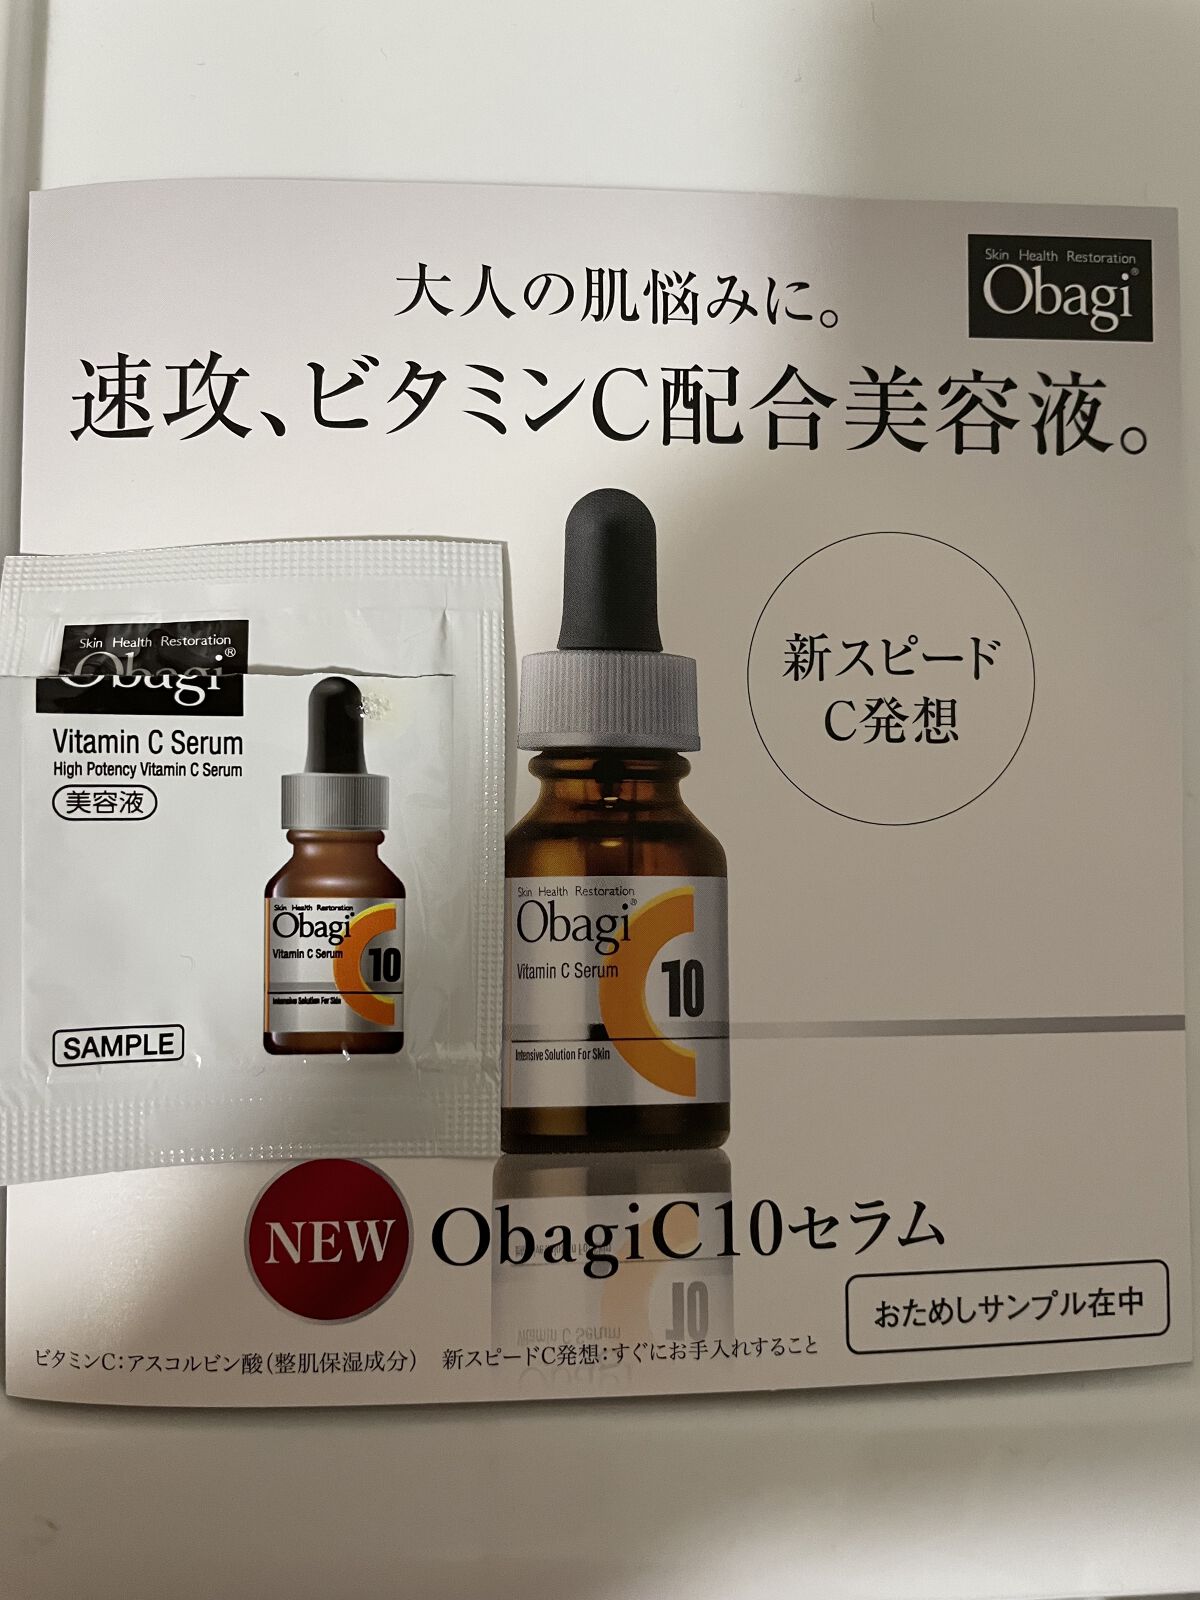 新品】Obagi C25セラムネオ12ml 酵素洗顔パウダー30個